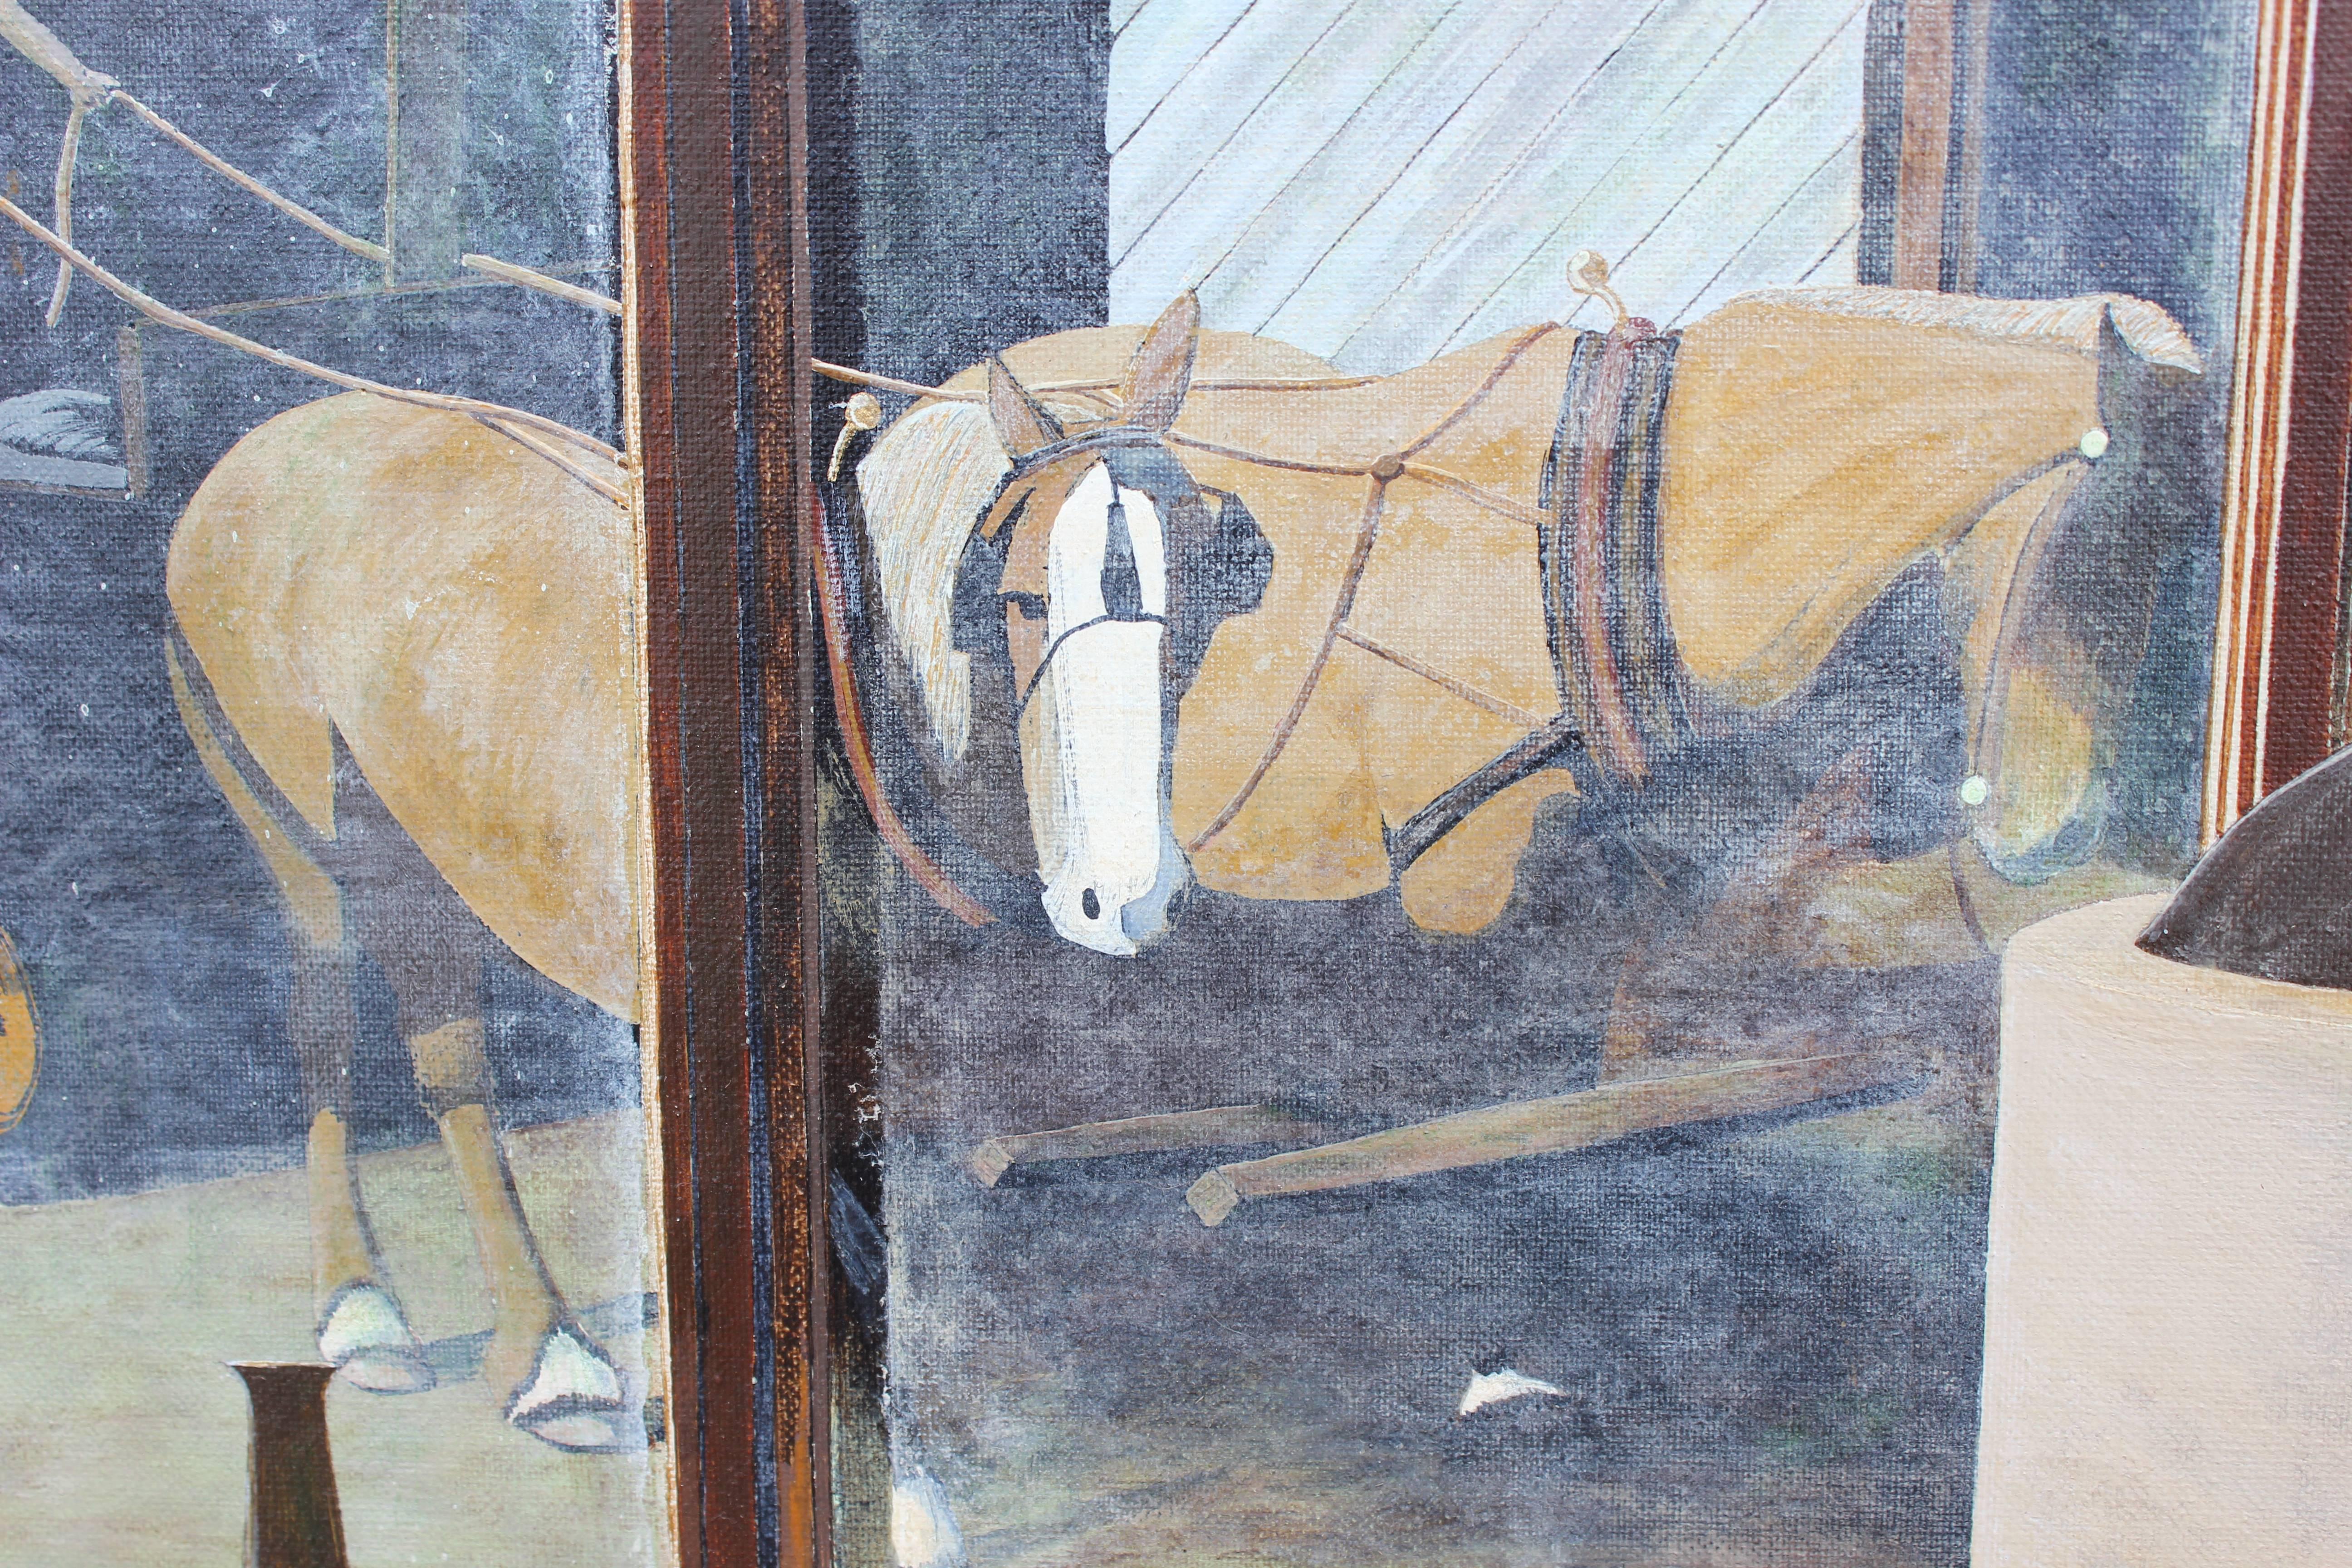 Stilleben von Marvin Smith, das ein ländliches Fensterbrett mit Blick auf einen Pferdestall zeigt. Auf dem Gemälde sind verschiedene Werkzeuge zu sehen, wie eine Schaufel, die auf dem Fensterbrett ruht, und ein Krug mit Korn, der in der Ecke hängt.